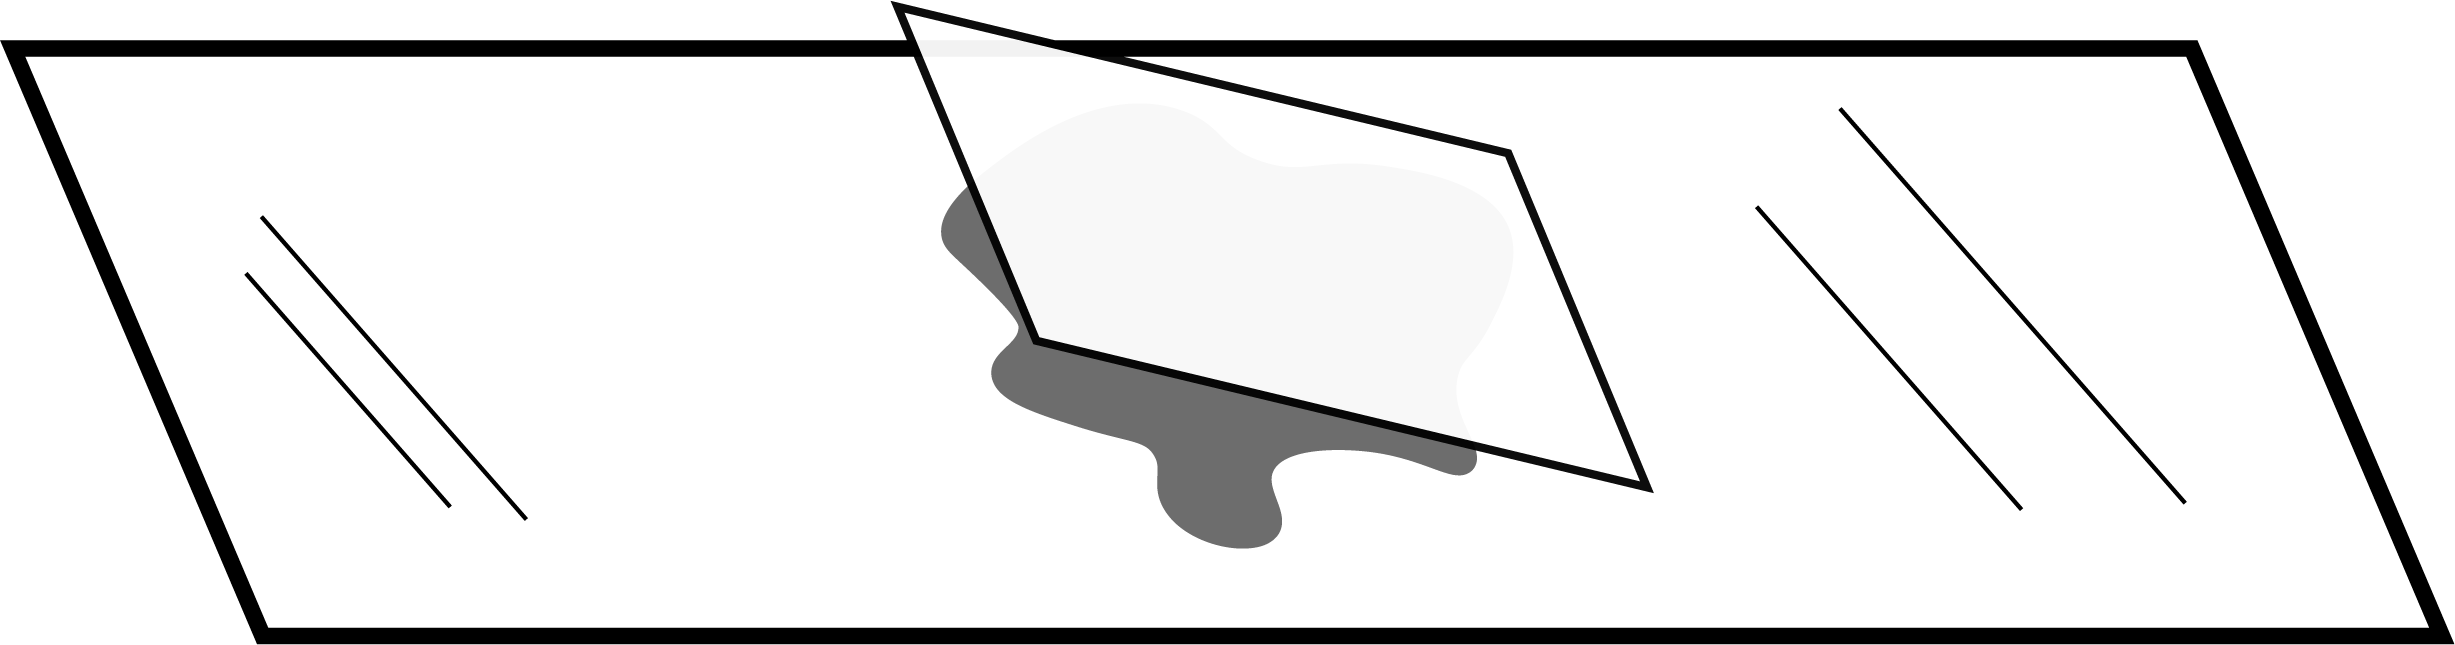 Una gotita de líquido en el centro de un portaobjetos con un cubreobjetos en ángulo, un lado tocando el portaobjetos, encima de él.